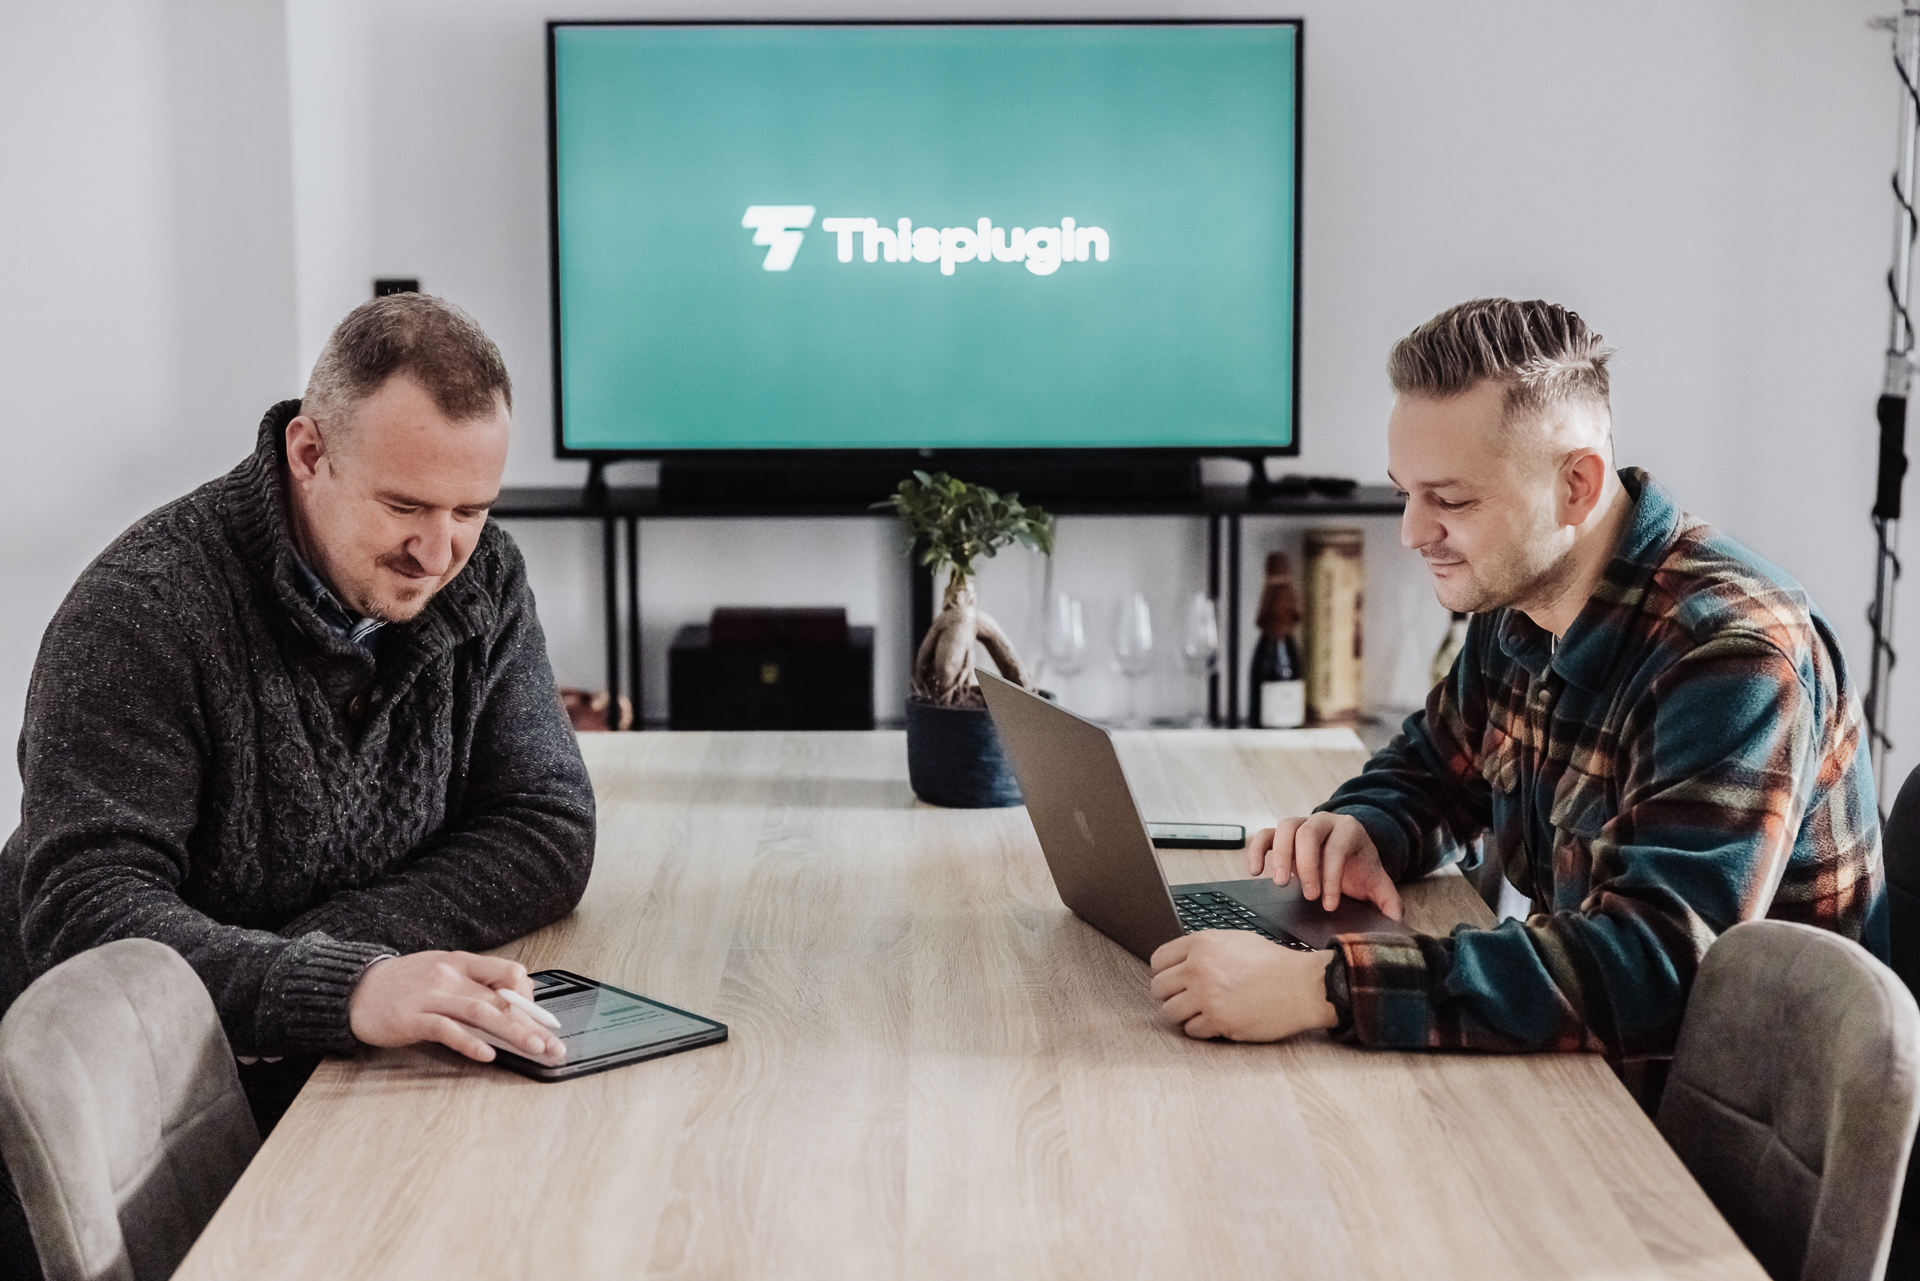 2 mladí muži pracujú na mobilných zariadeniach pri stole v zasadačke, v pozadí TV s logom Thisplugin